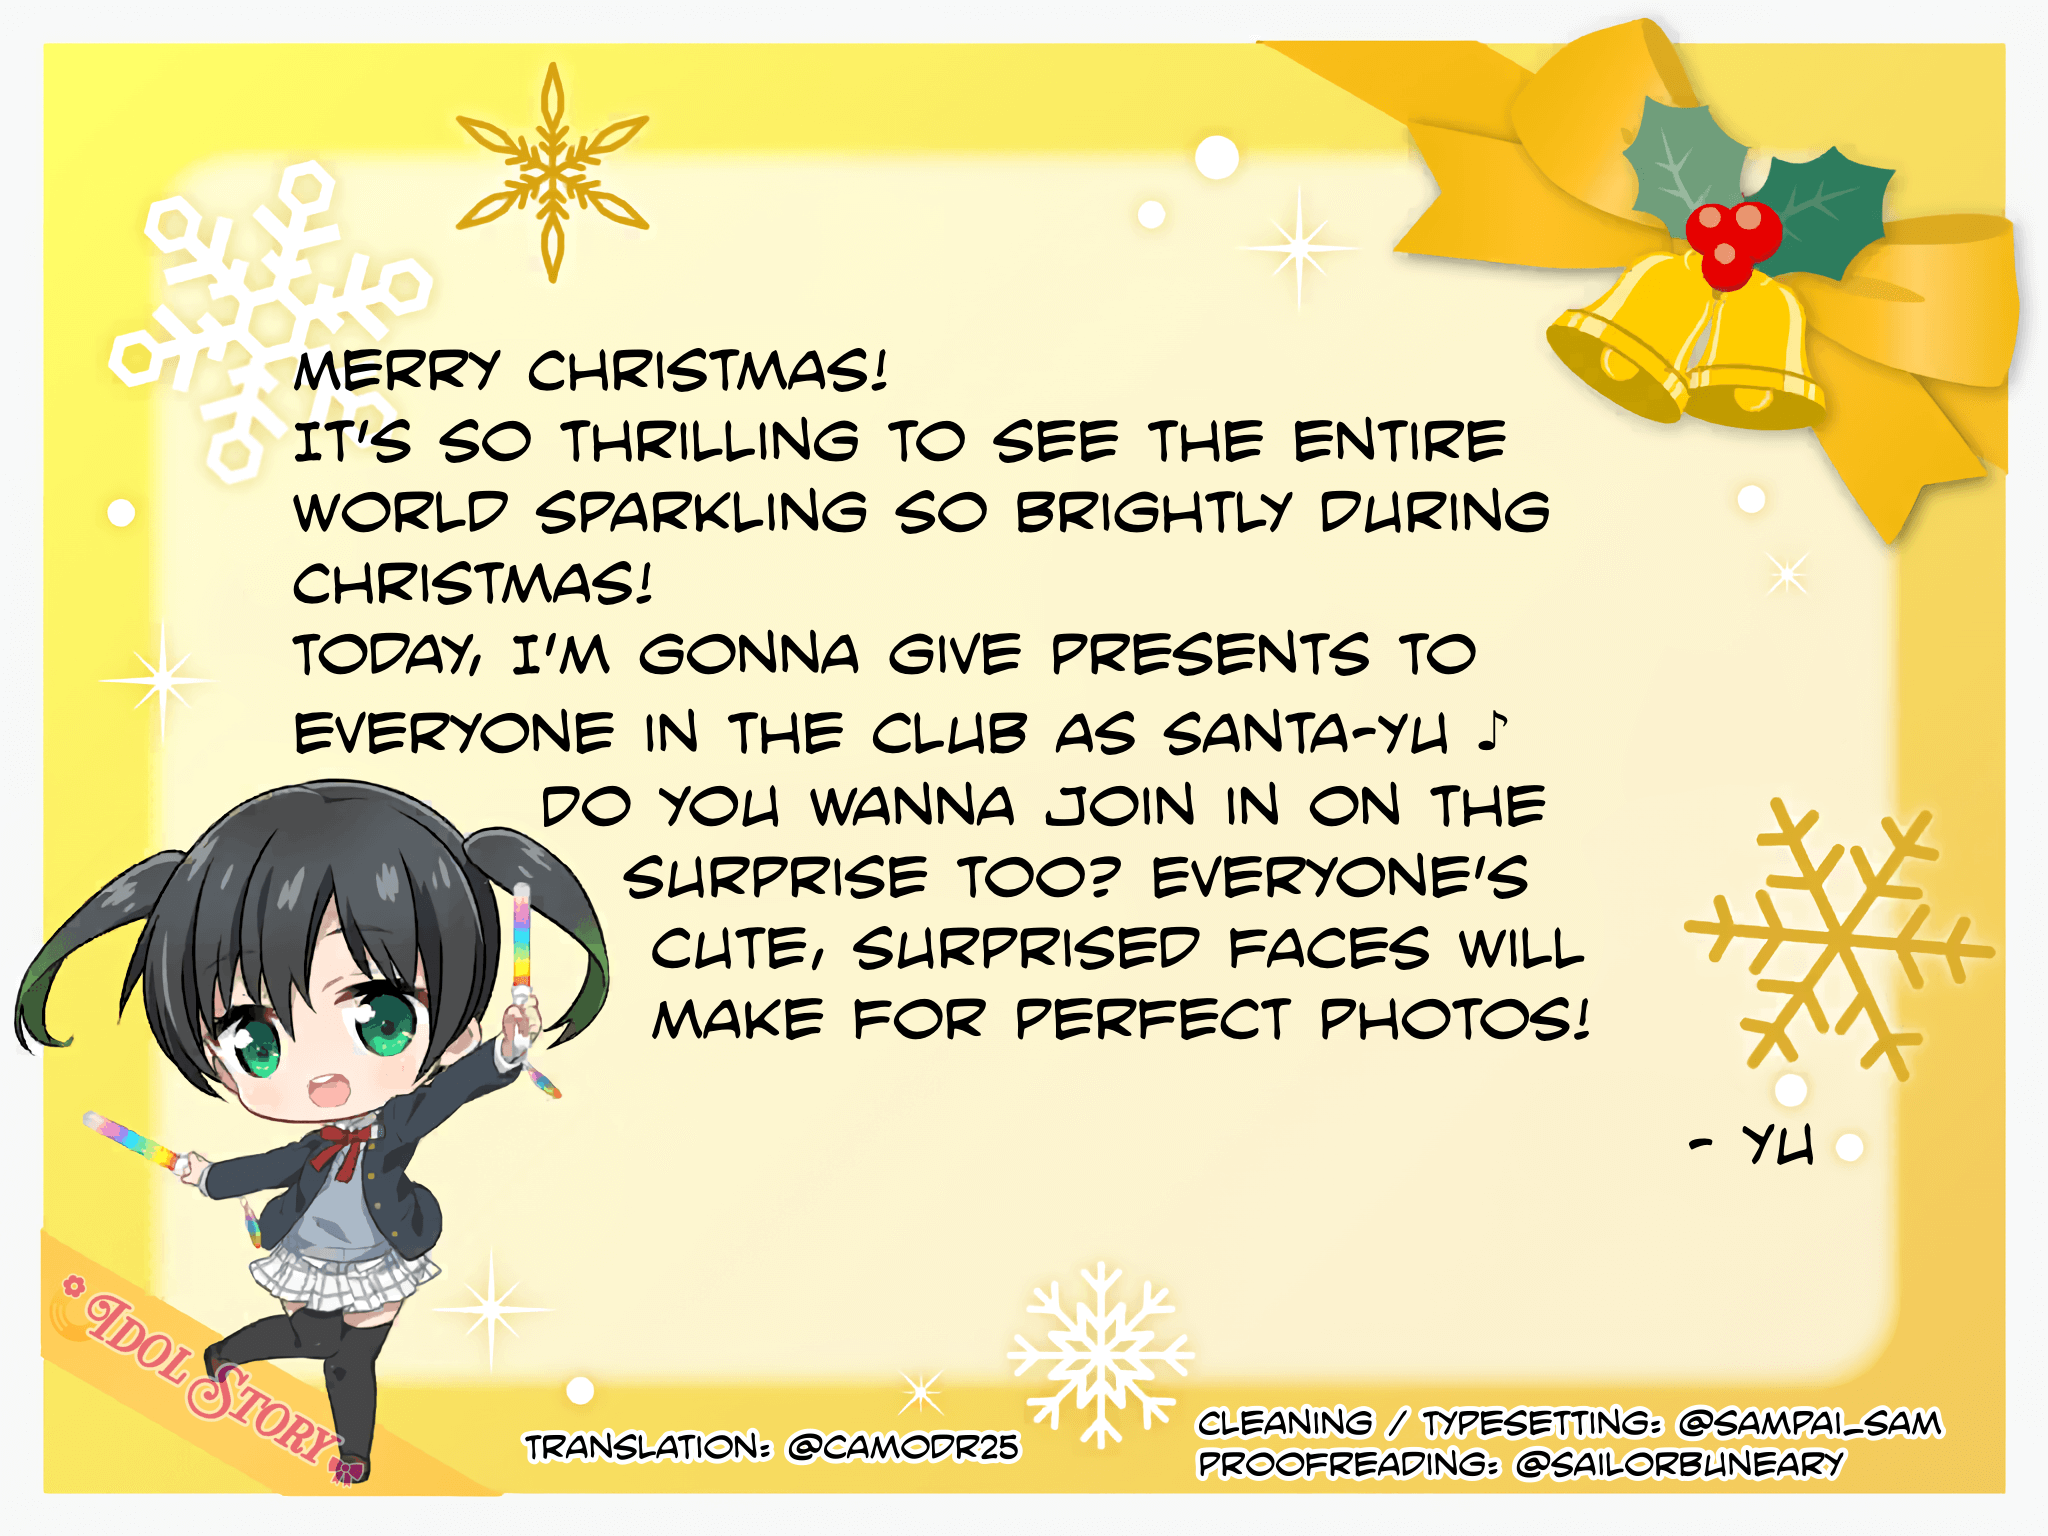 Yu's Christmas Card